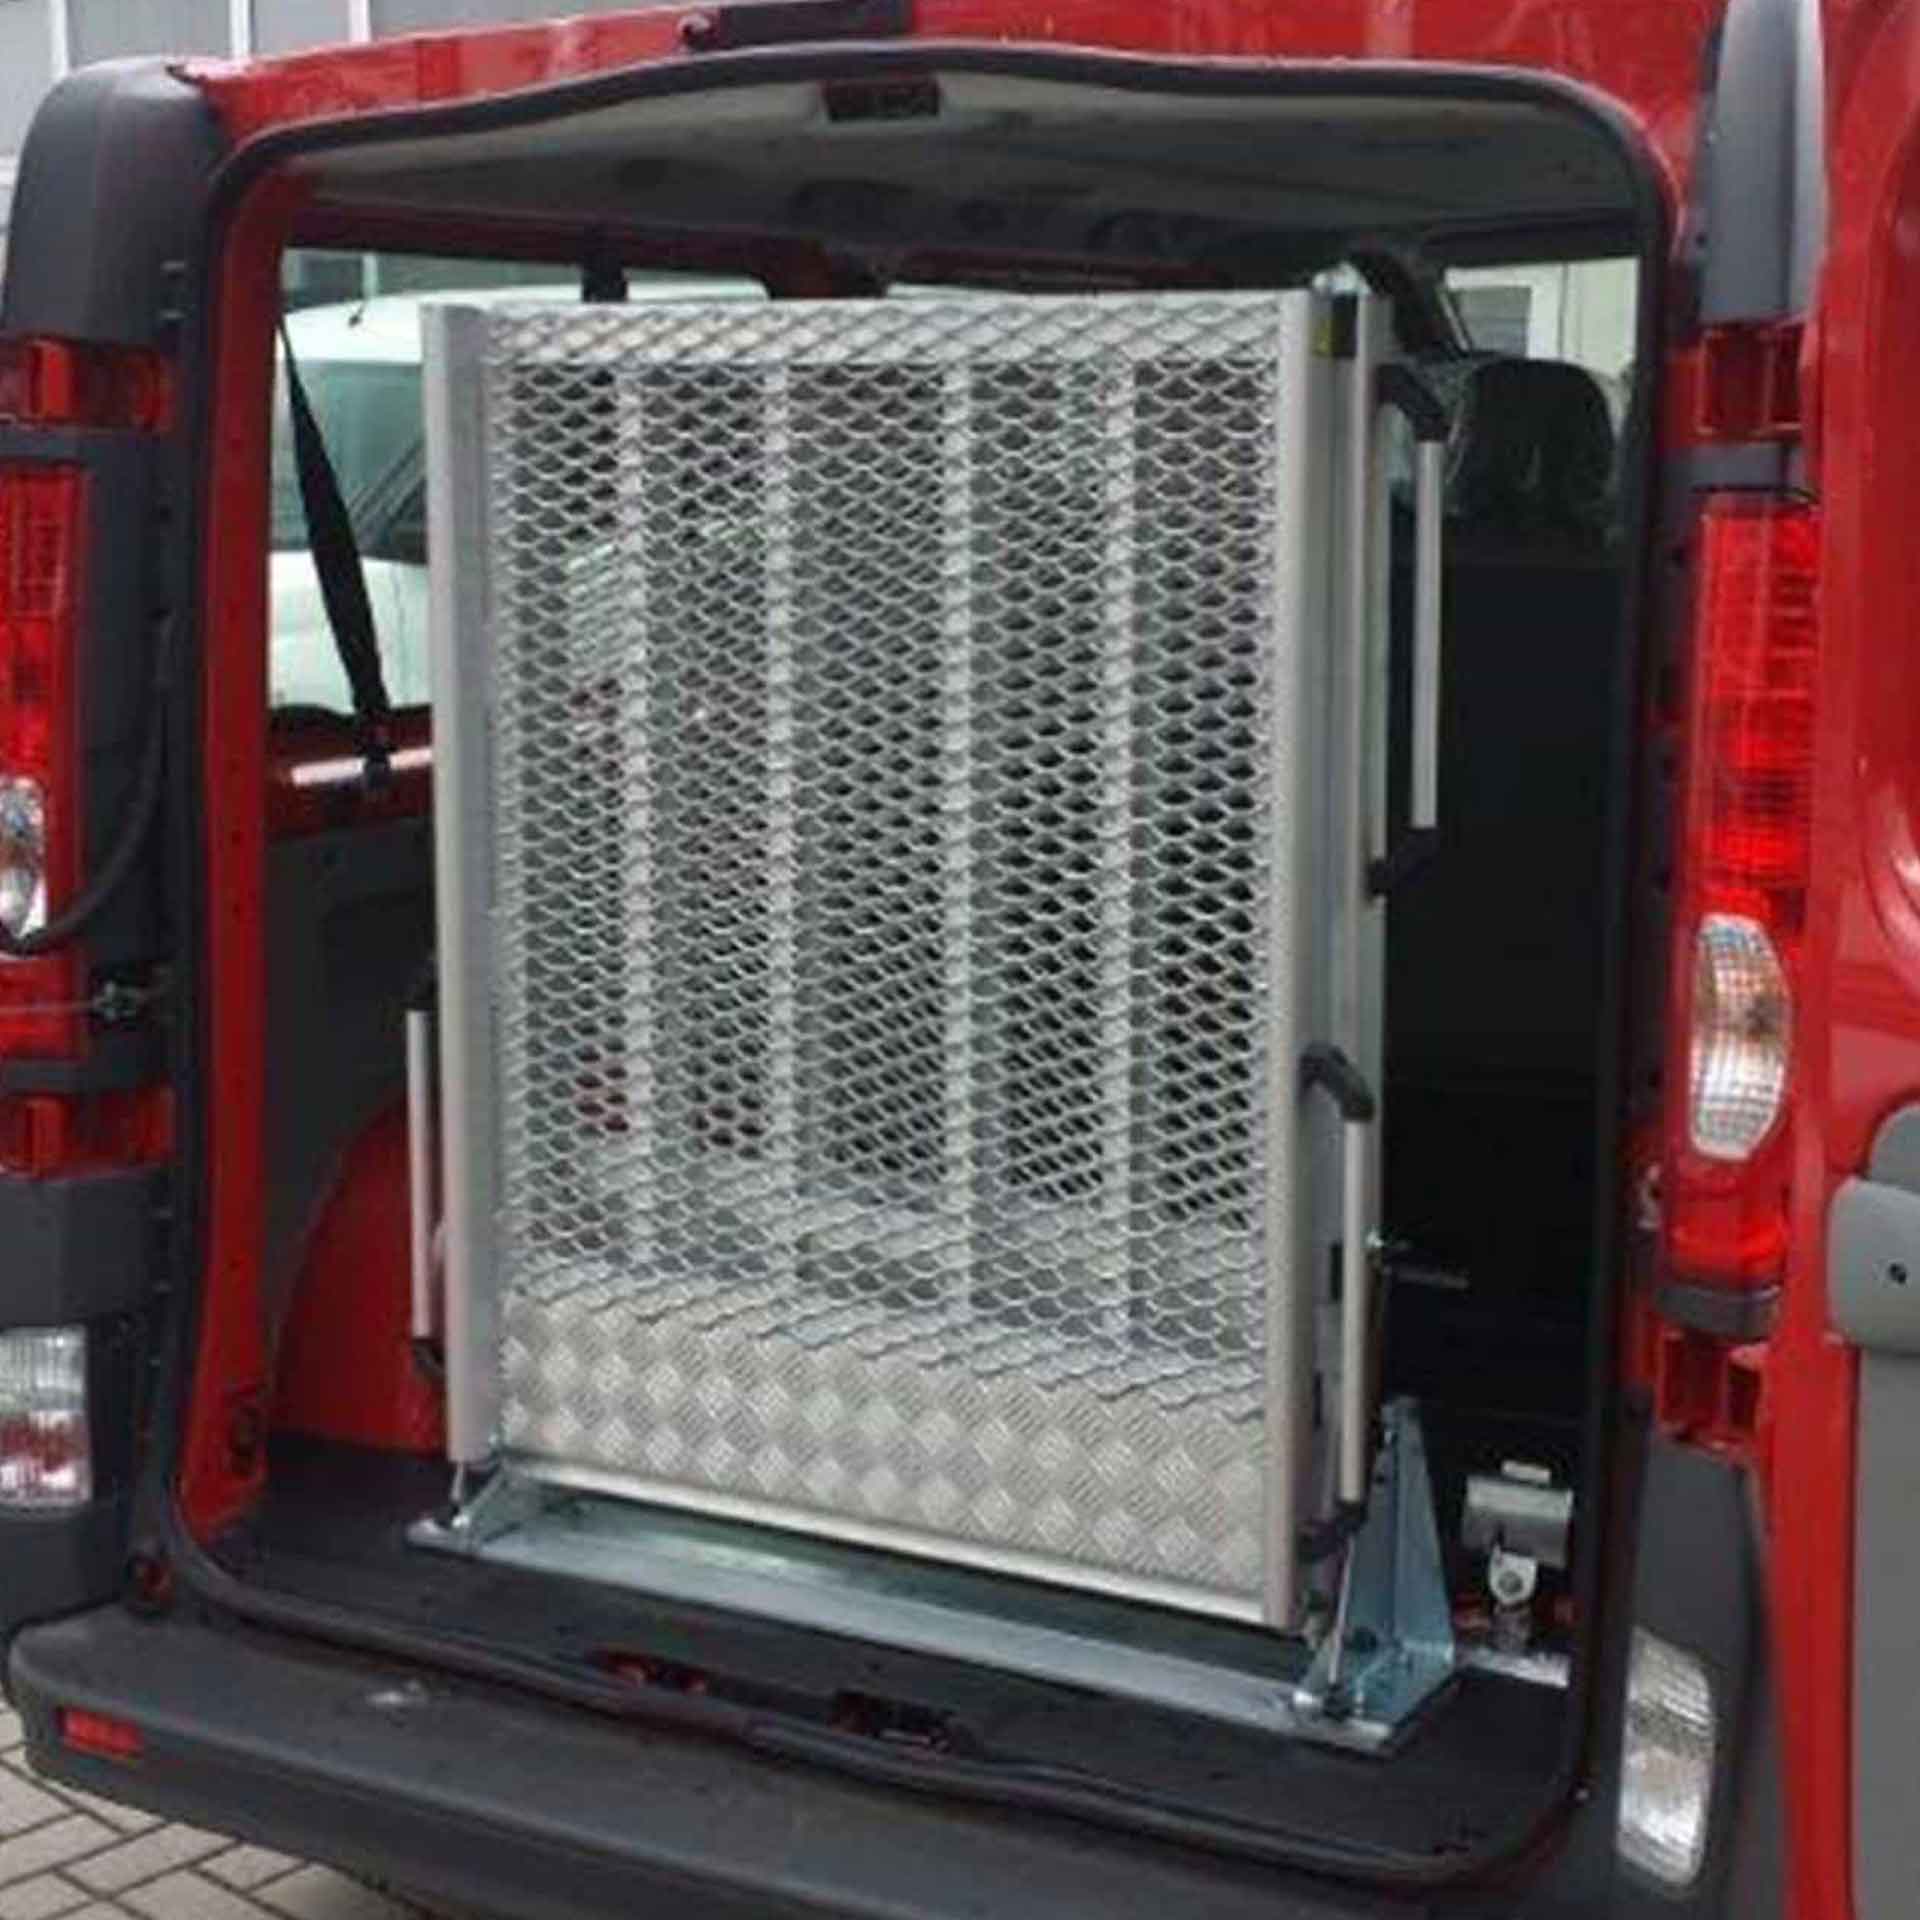 Serie EASY | Fest montierte Rollstuhlrampe für Kleinbusse - Abmessung 2.000 x 870 mm, mittig klappbar